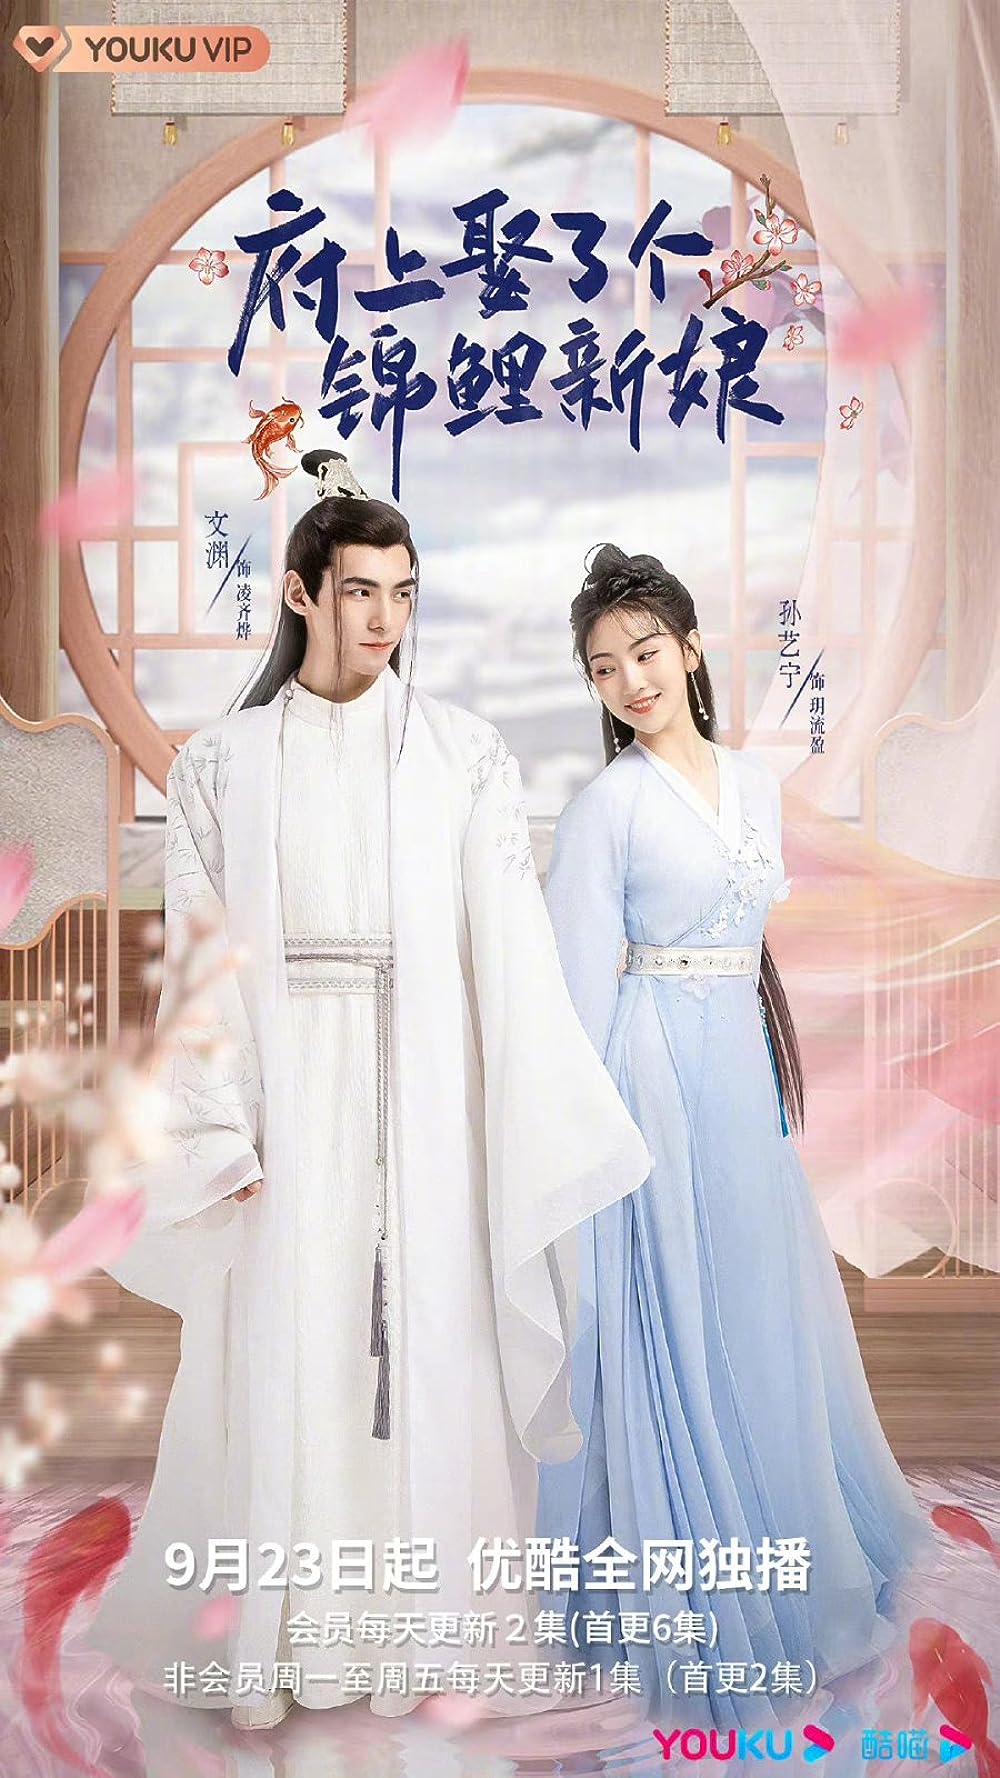 ดูหนังออนไลน์ฟรี ซีรี่ย์จีน The Blessed Bride (2022) จวนของข้ามีฮูหยินคนใหม่ ซับไทย (จบ)